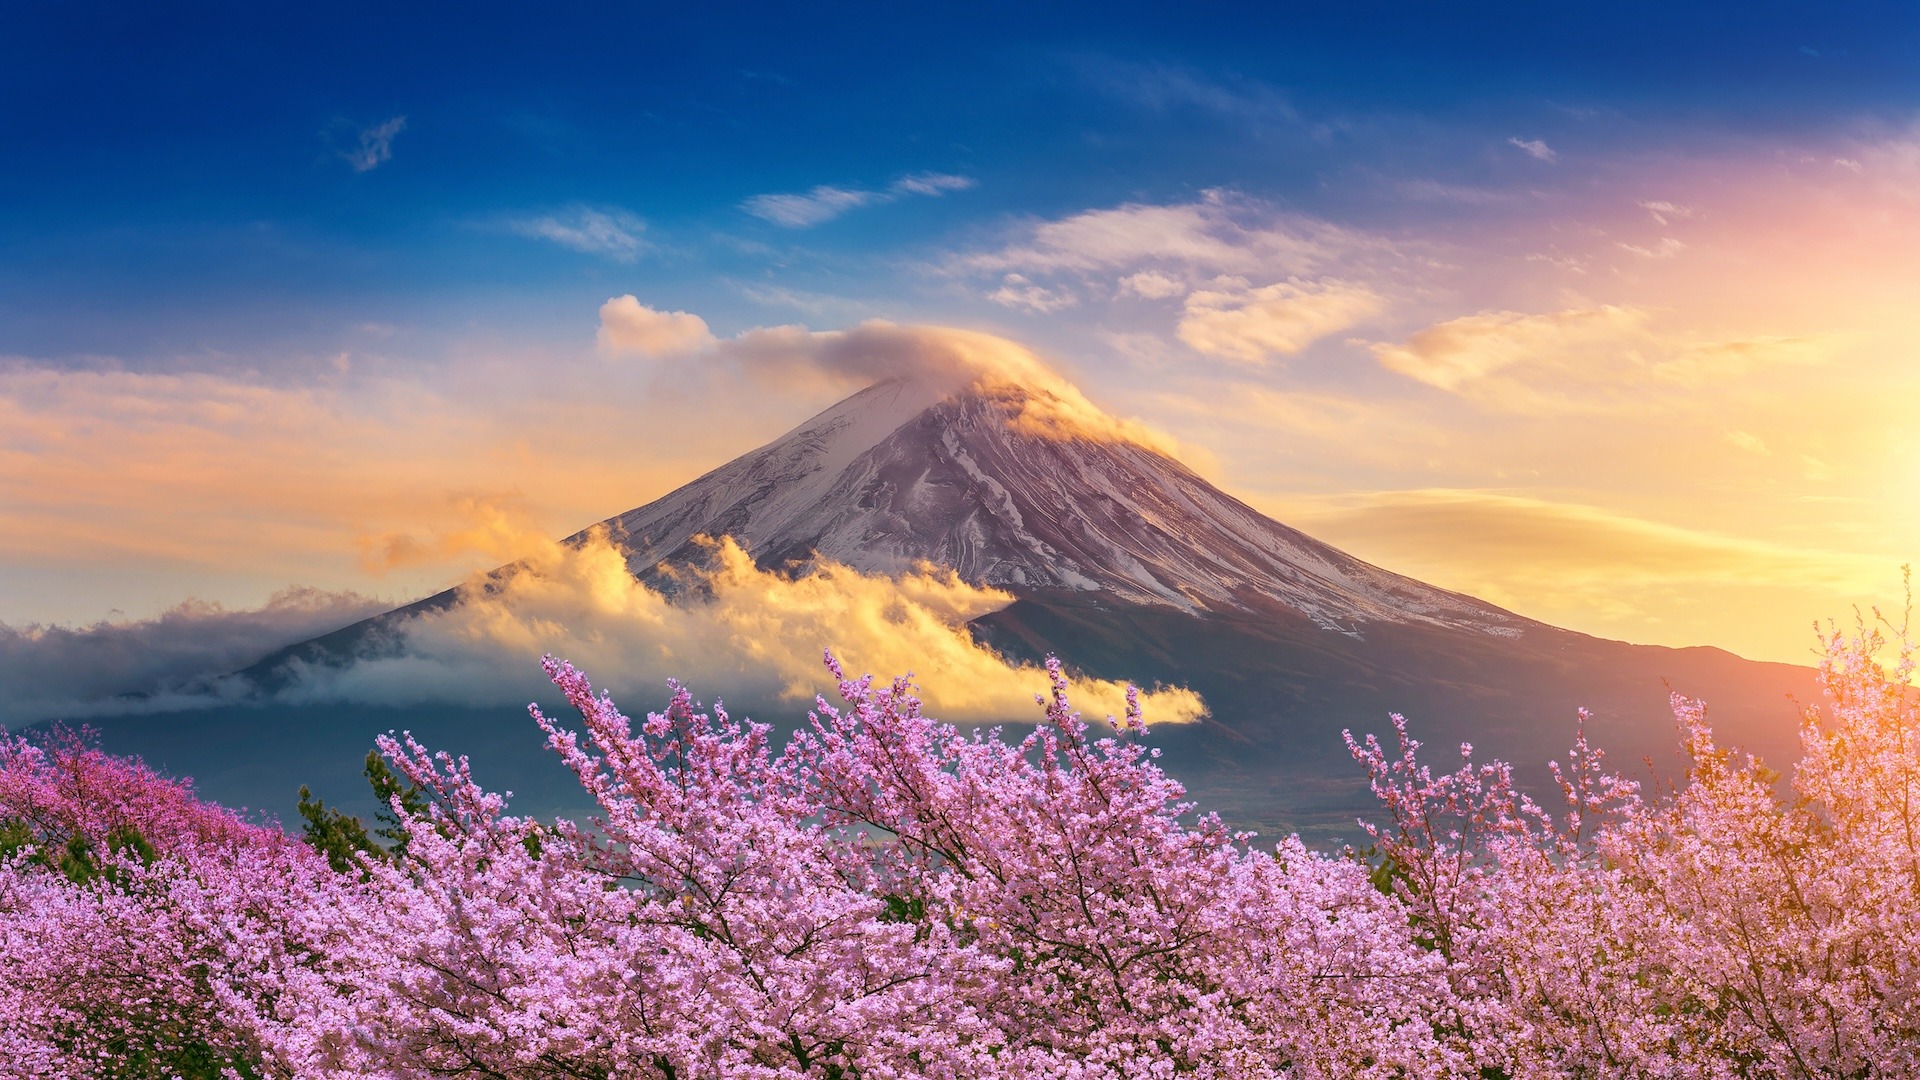 Gunung Fuji: Perjalanan Fotografi Menjelajahi Pemandangan yang Ikonik